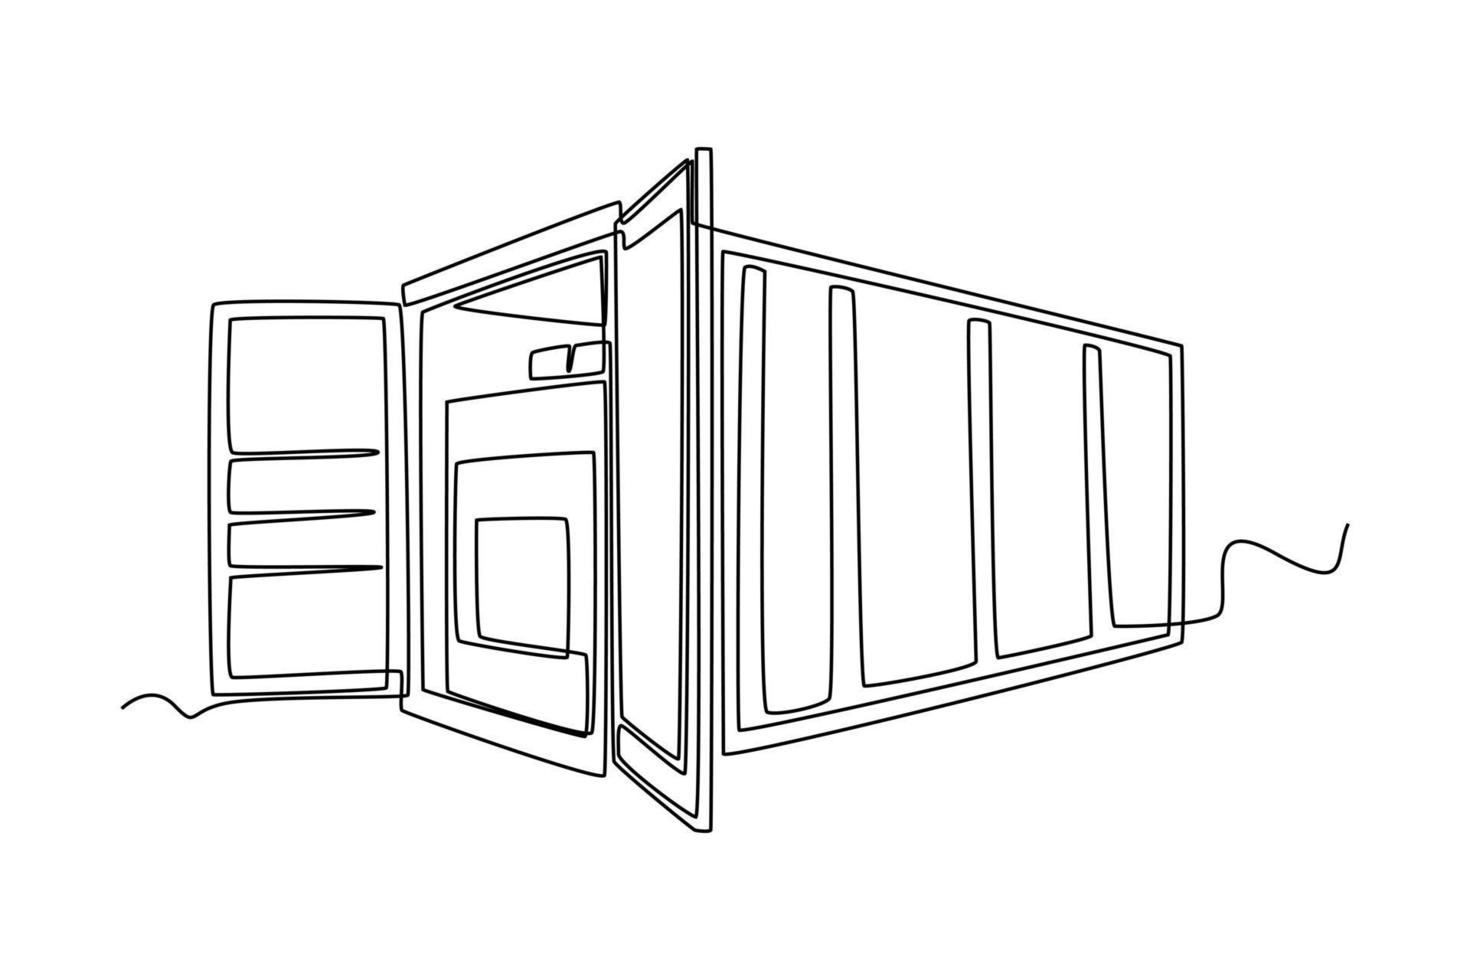 durchgehende einzeilige zeichnung öffnen sie einen frachtcontainer mit vollen pappkartons. Cargo-Konzept. einzeiliges zeichnen design vektorgrafik illustration. vektor